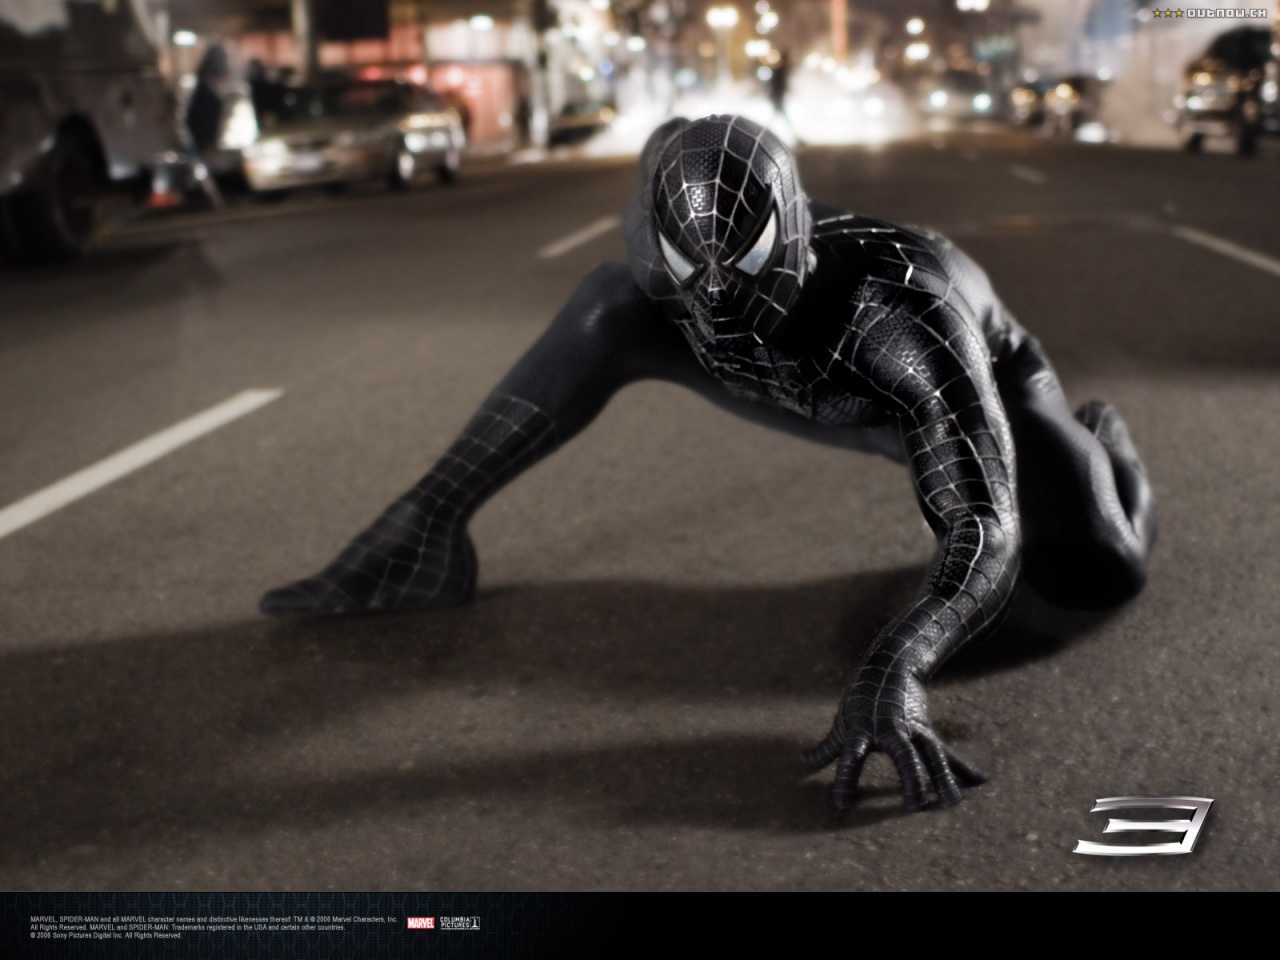 Black Spider Man